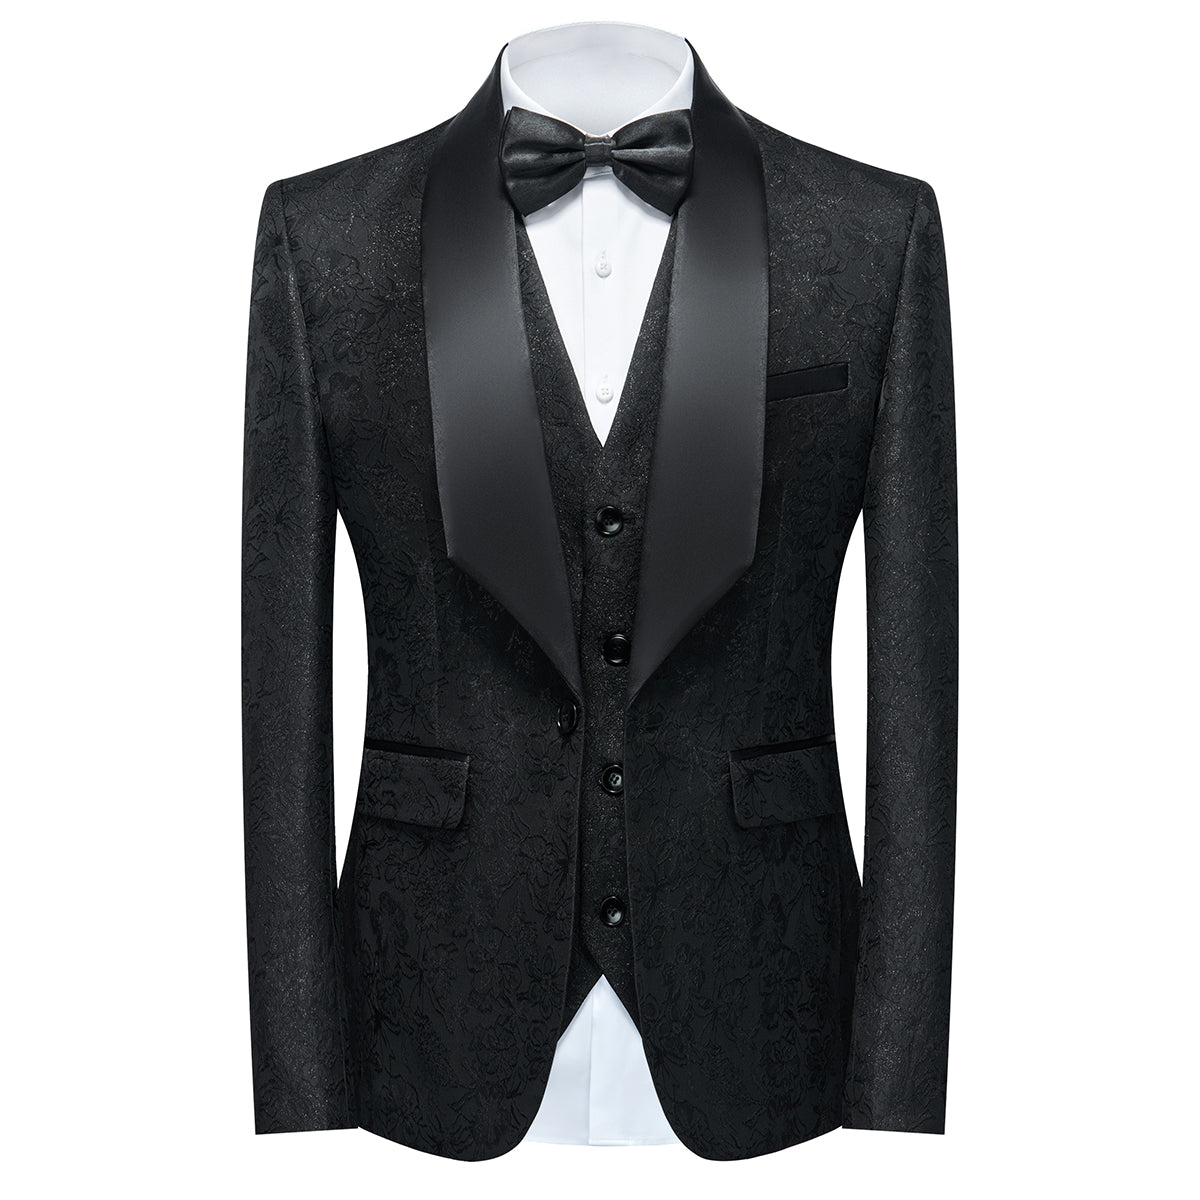 Men's Shawl Collar Print Suit 3-Piece Dress Suit Black